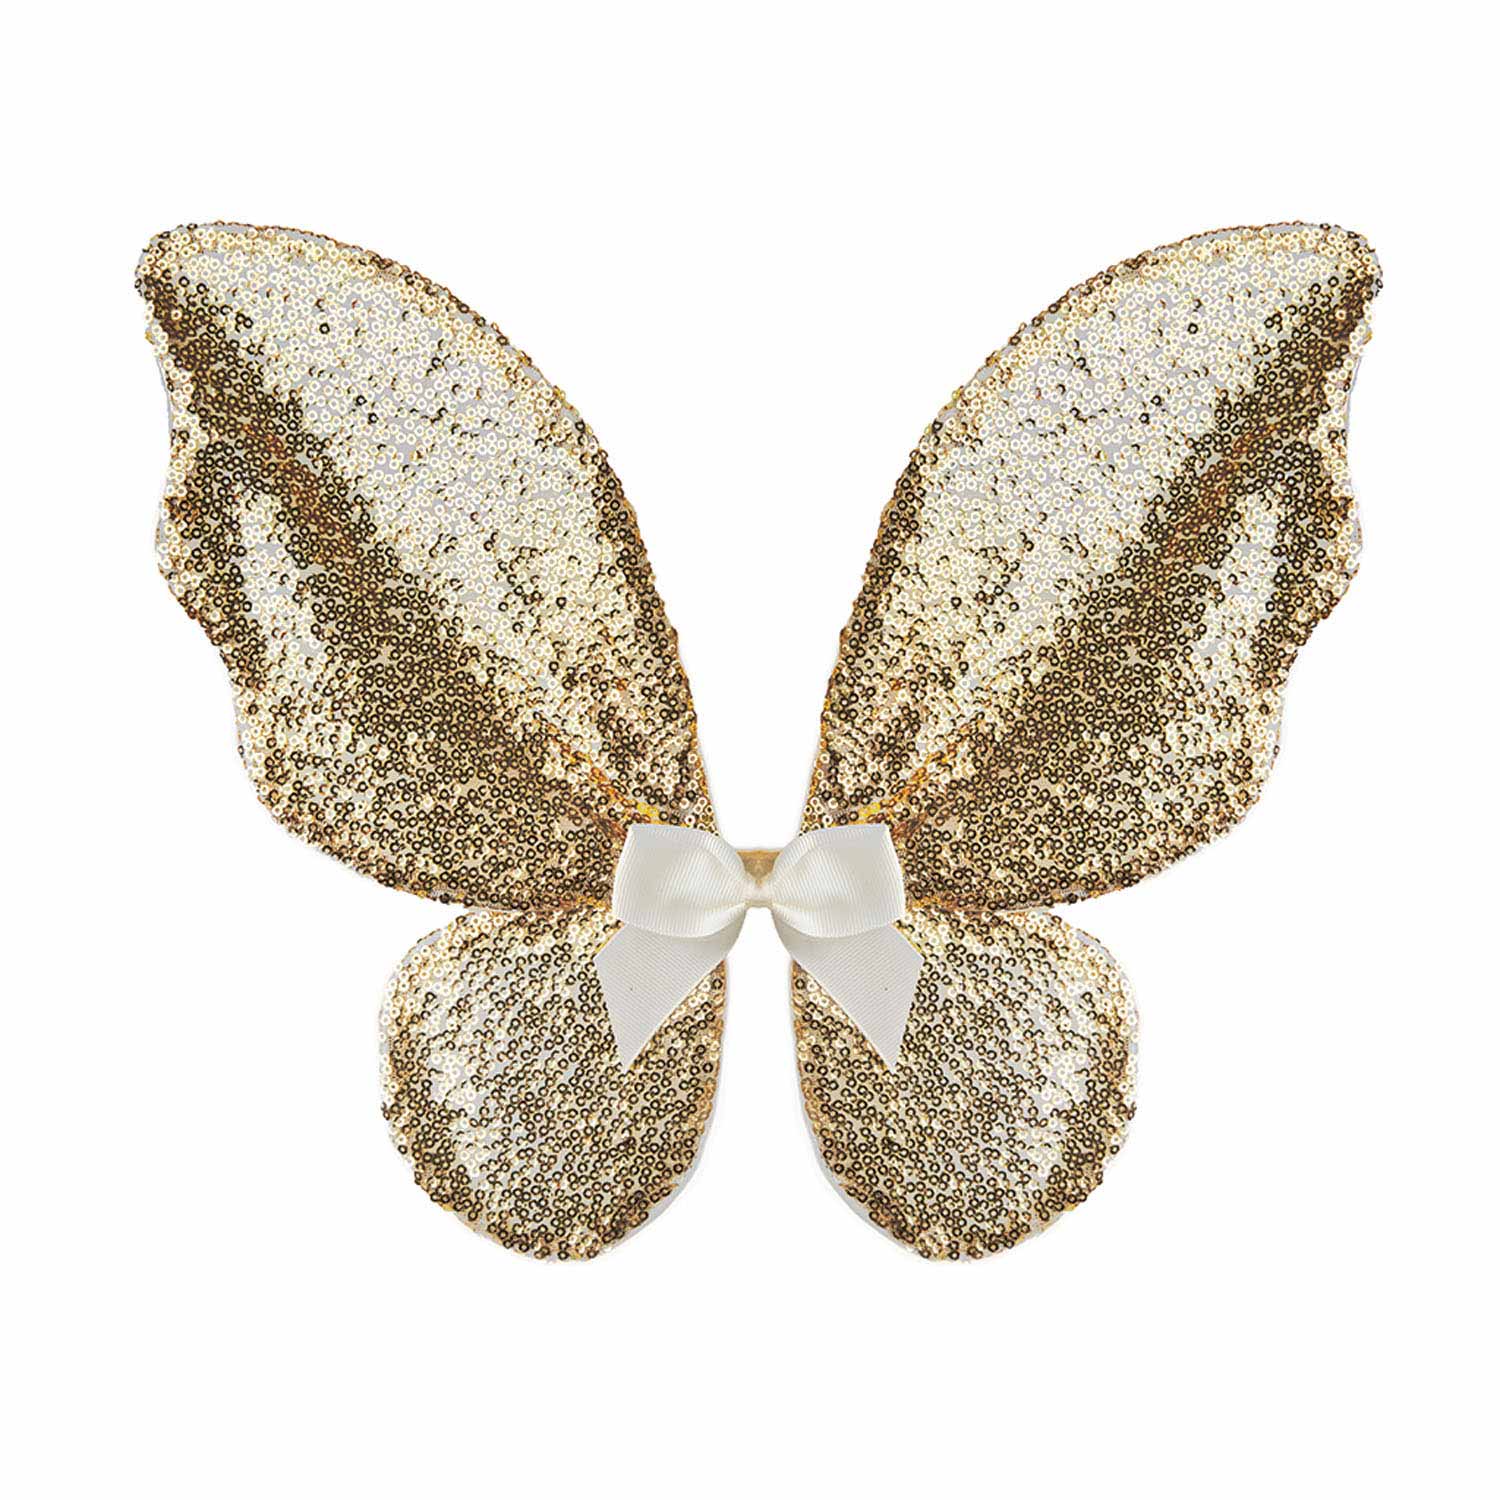 Verkleedset Vlinder Goud met Staf, 4-6 jaar